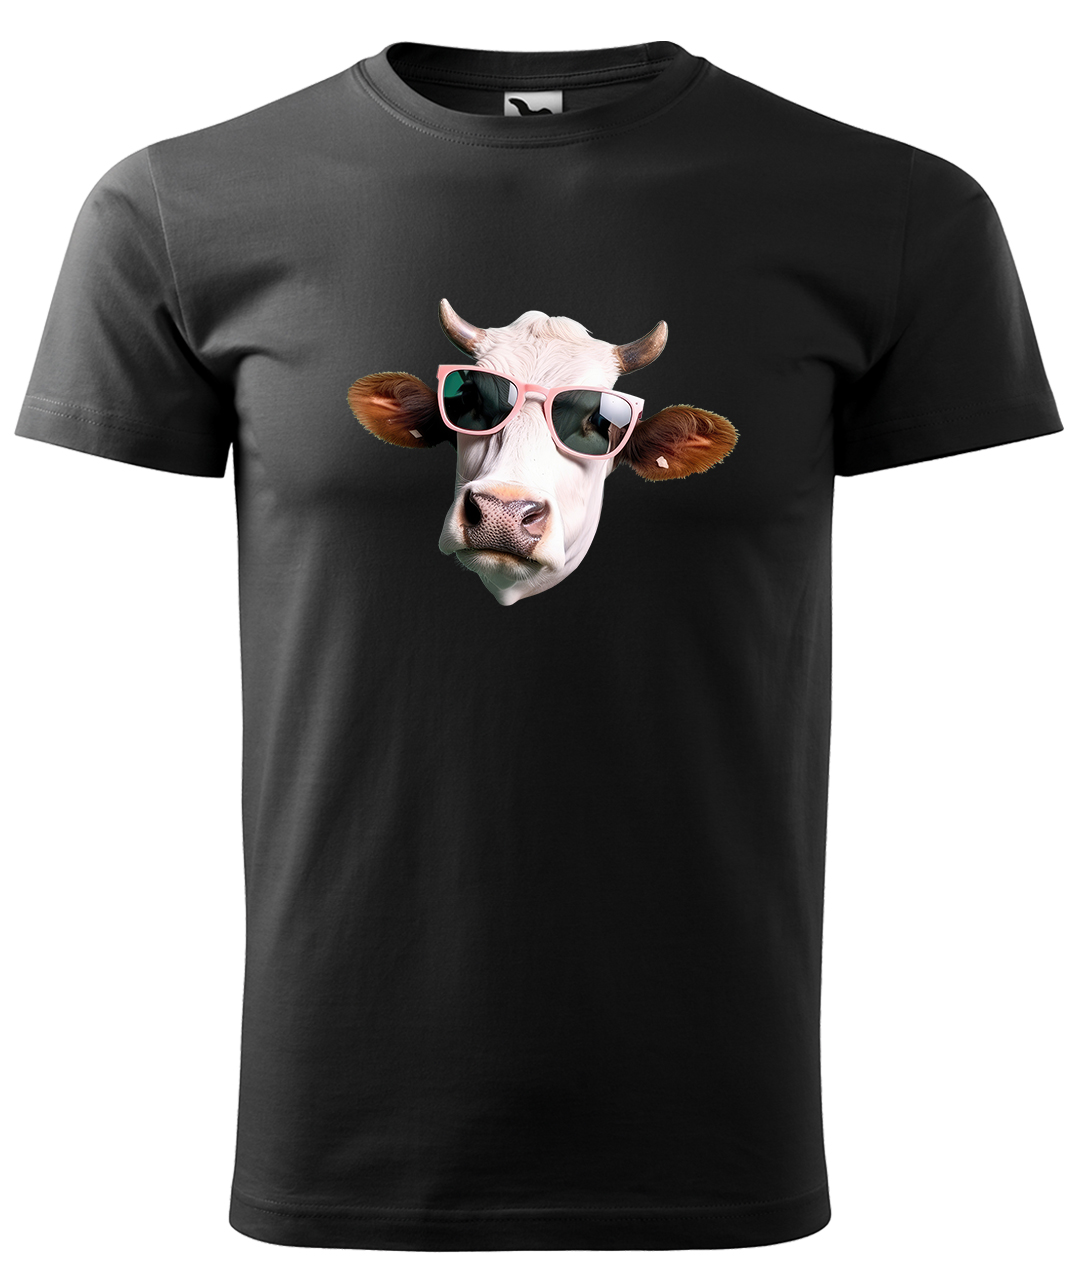 Dětské tričko s krávou - Kráva v brýlích Velikost: 8 let / 134 cm, Barva: Černá (01), Délka rukávu: Krátký rukáv